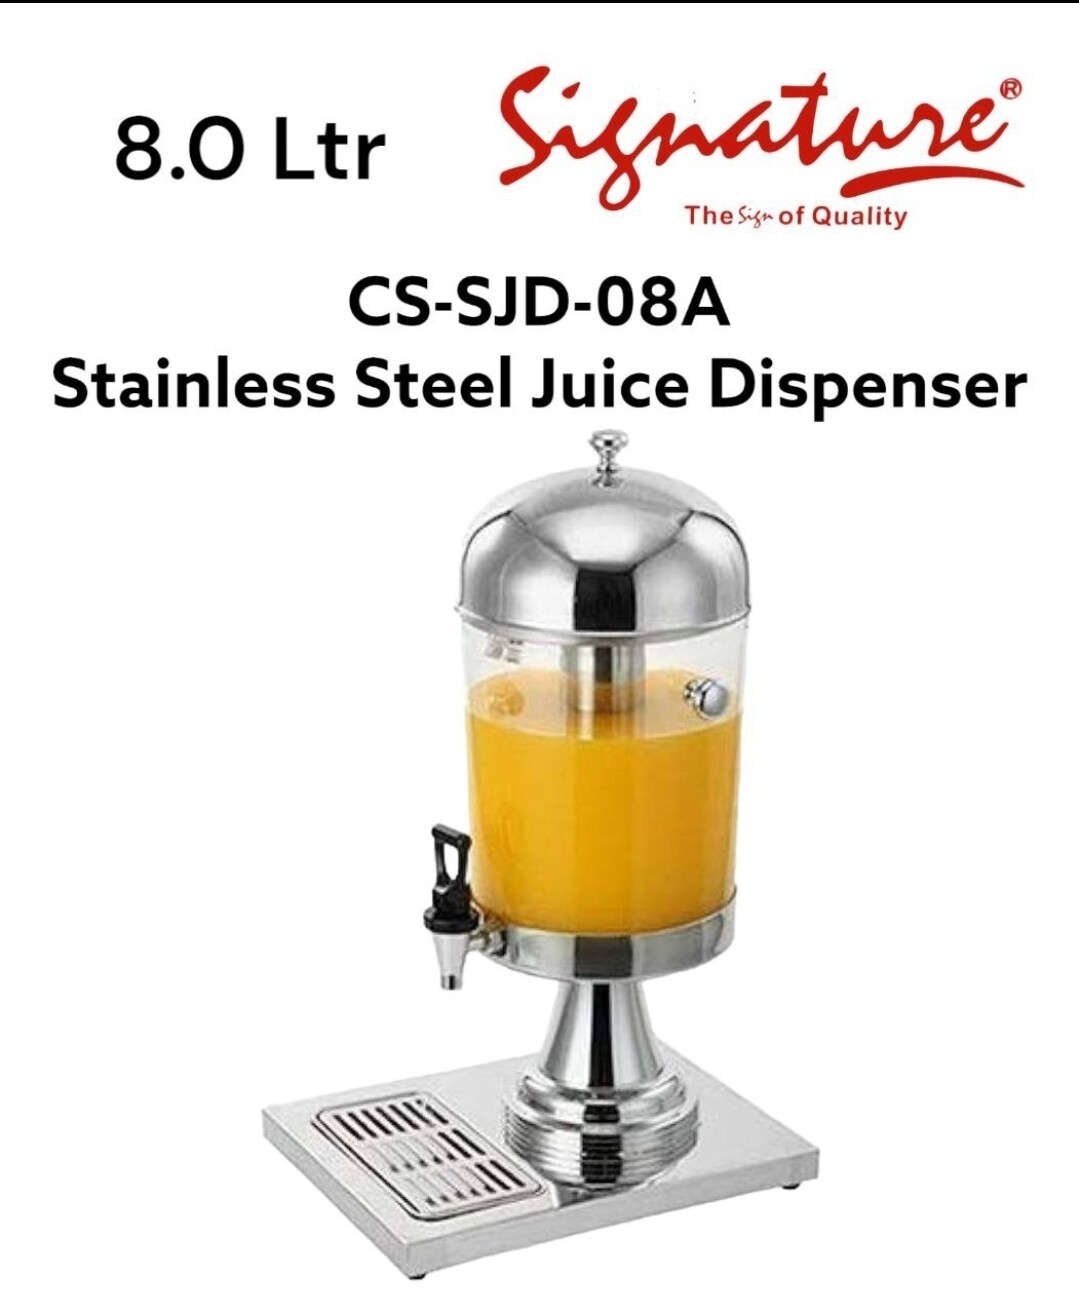 Signature 8.0 Ltr Juice Dispenser
SC-SJD-08A